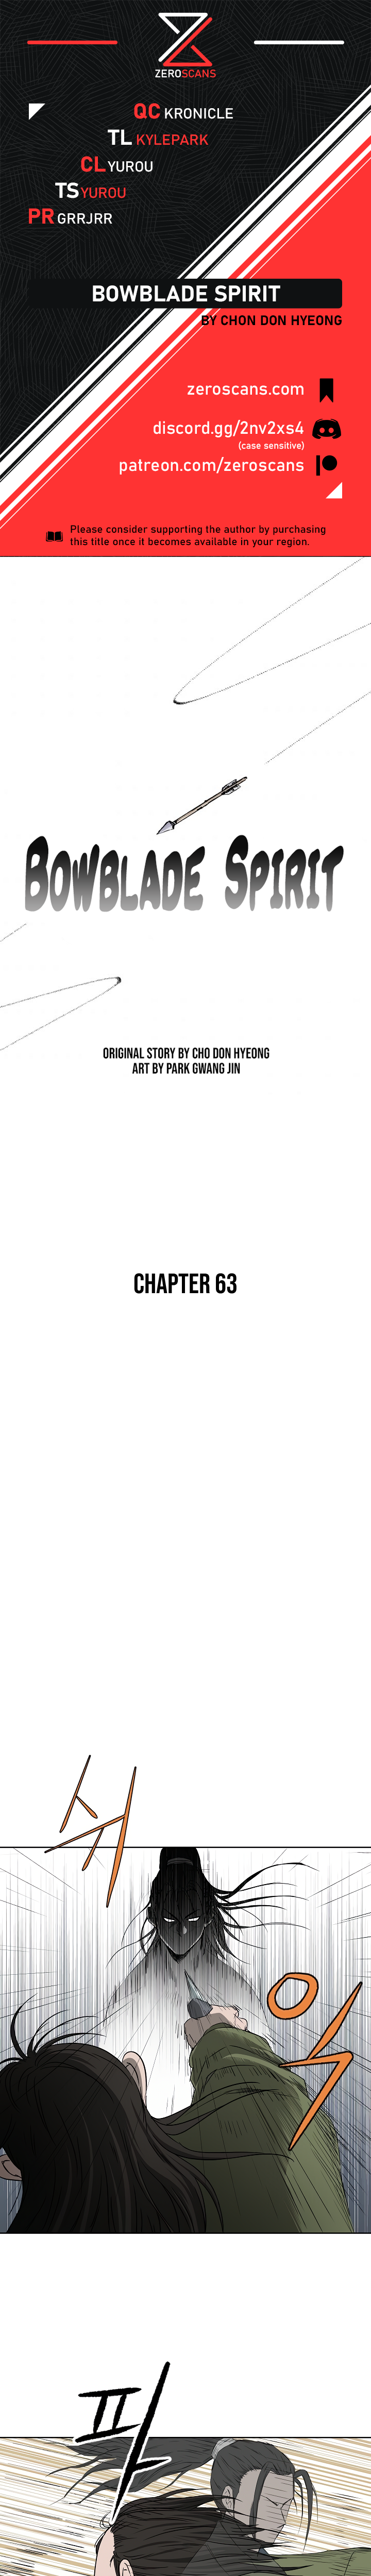 Bowblade Spirit - Chapter 5988 - Image 1